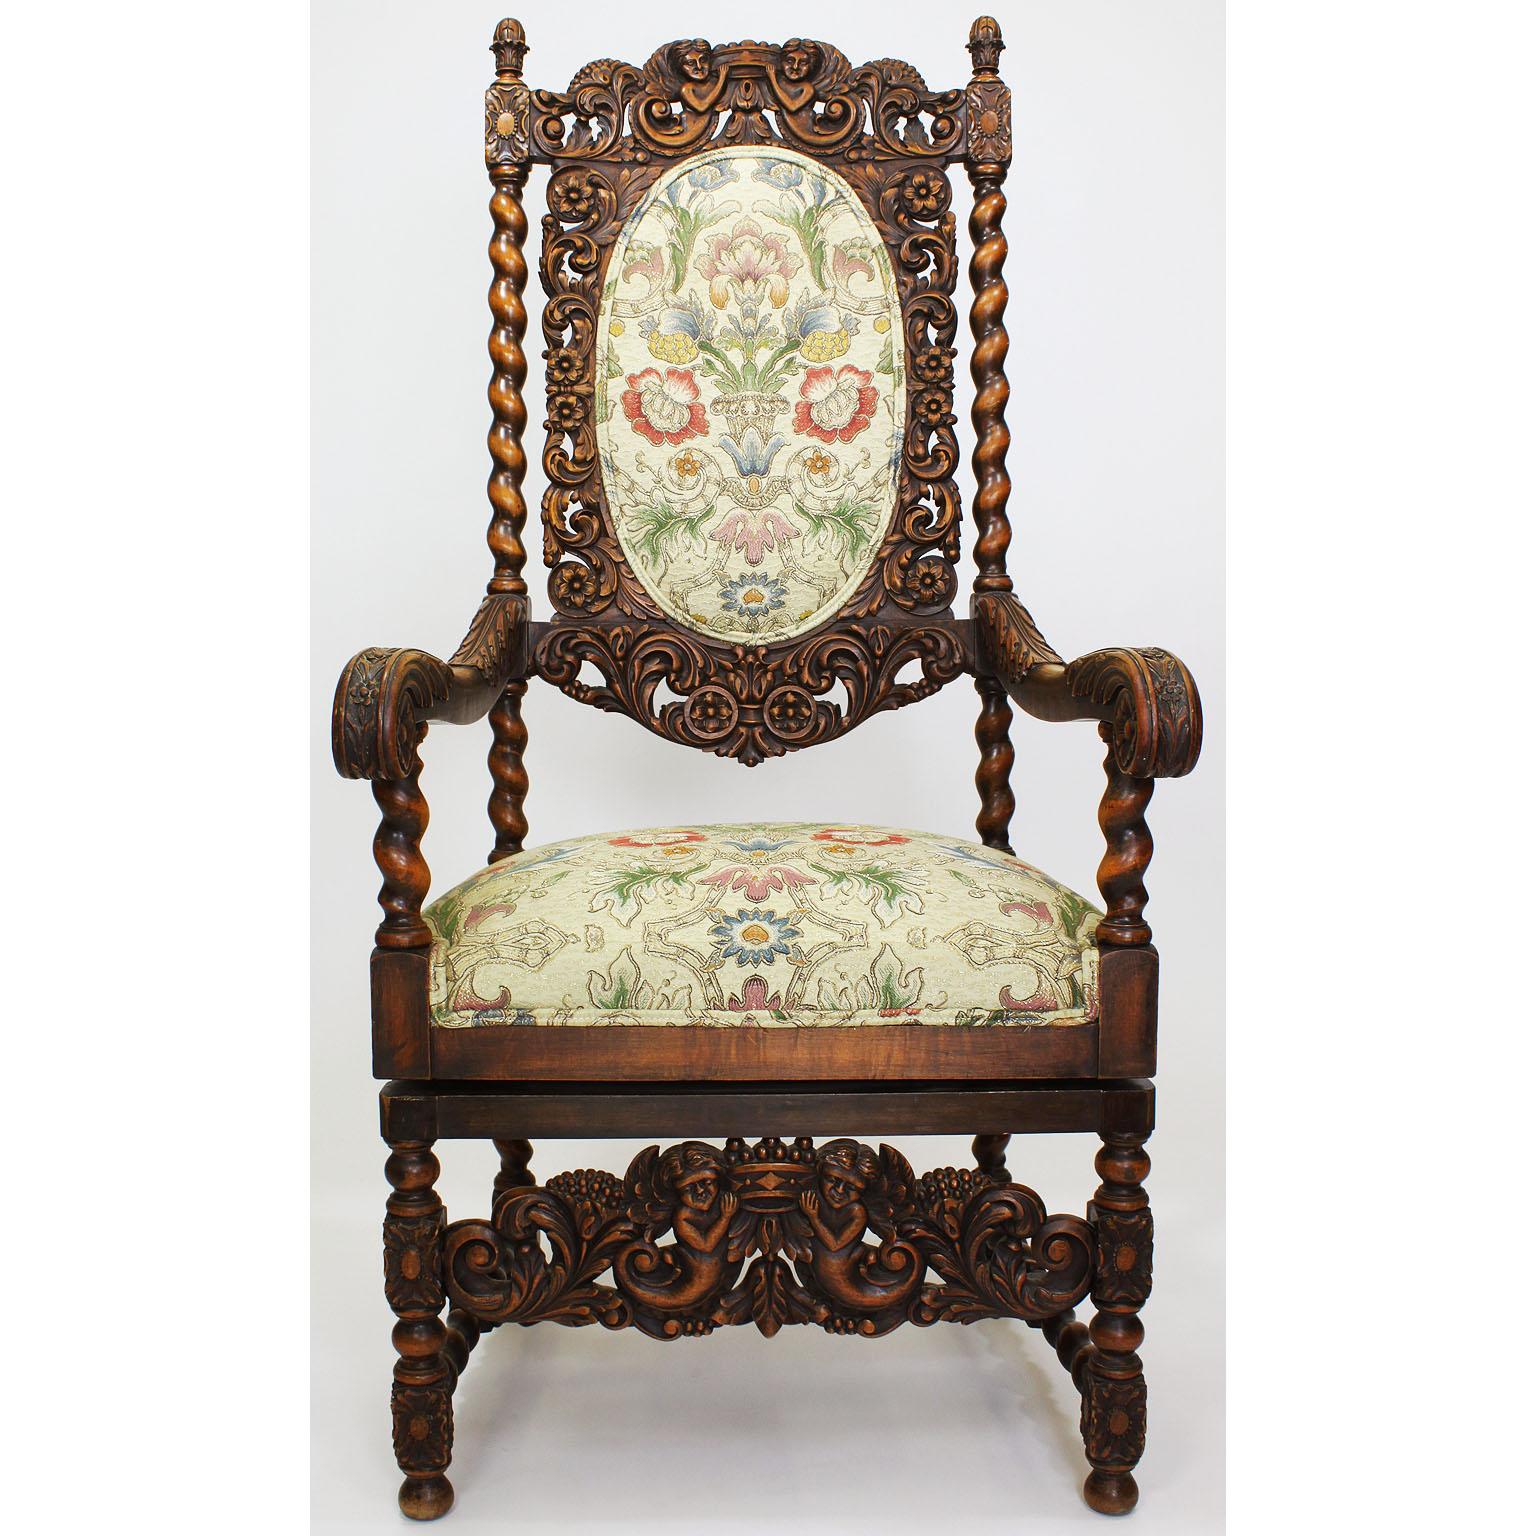 Paire de fauteuils trône à haut dossier en noyer sculpté, de style néo-baroque italien des XIXe et XXe siècles. Chaque fauteuil est tapissé d'un tissu floral en soie crème et or. Veuillez noter que ces fauteuils ont été récemment modifiés pour